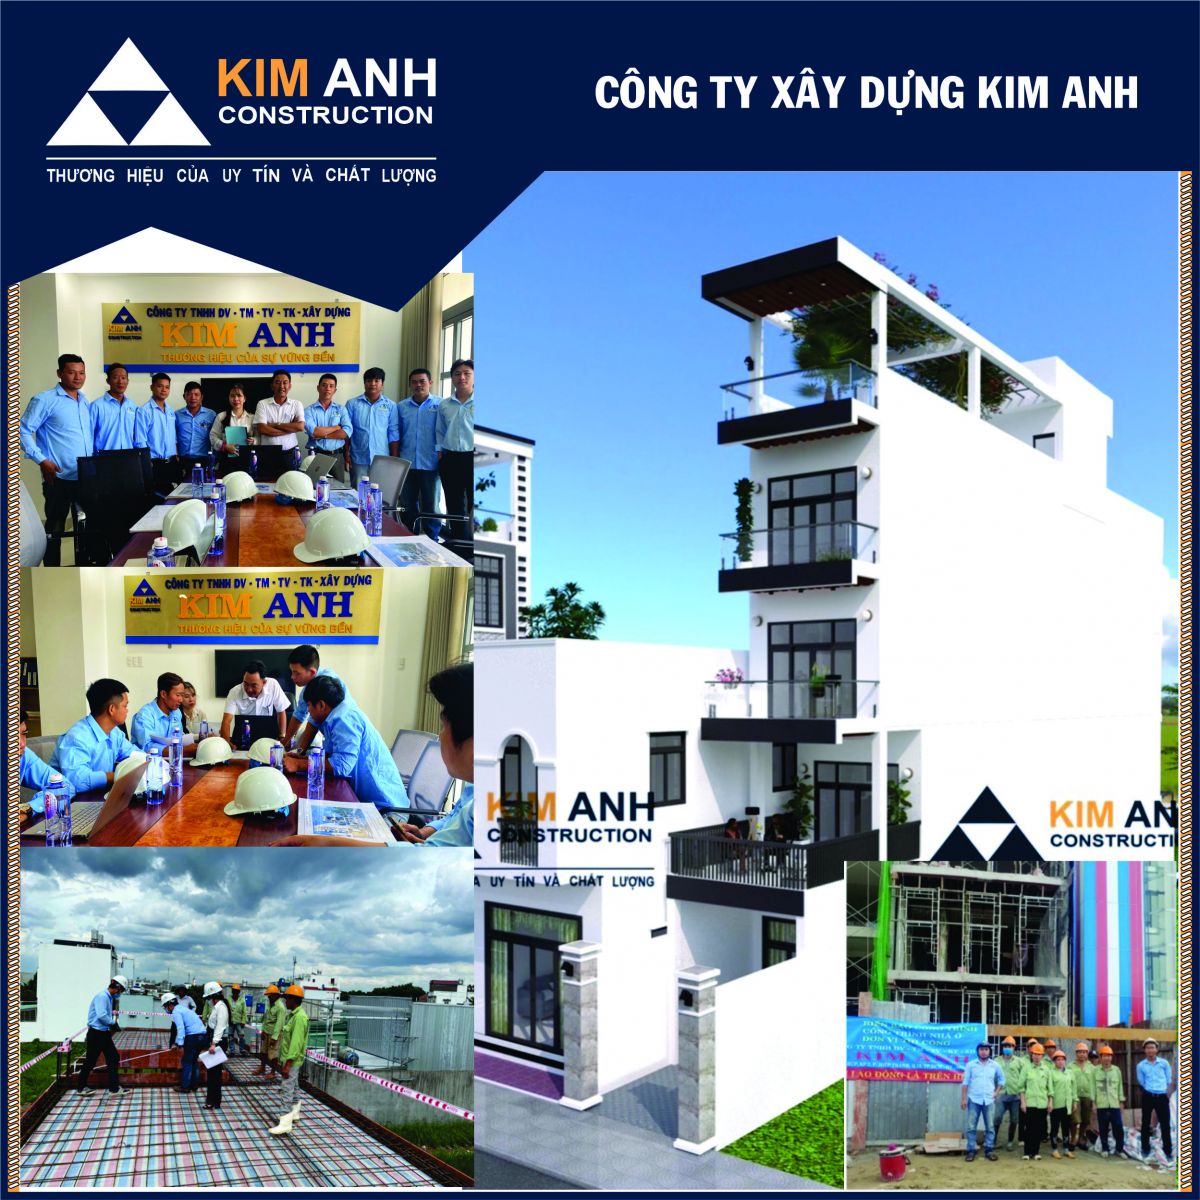 Xây Dựng Kim Anh: Công ty xây dựng nhà uy tín Quận 12